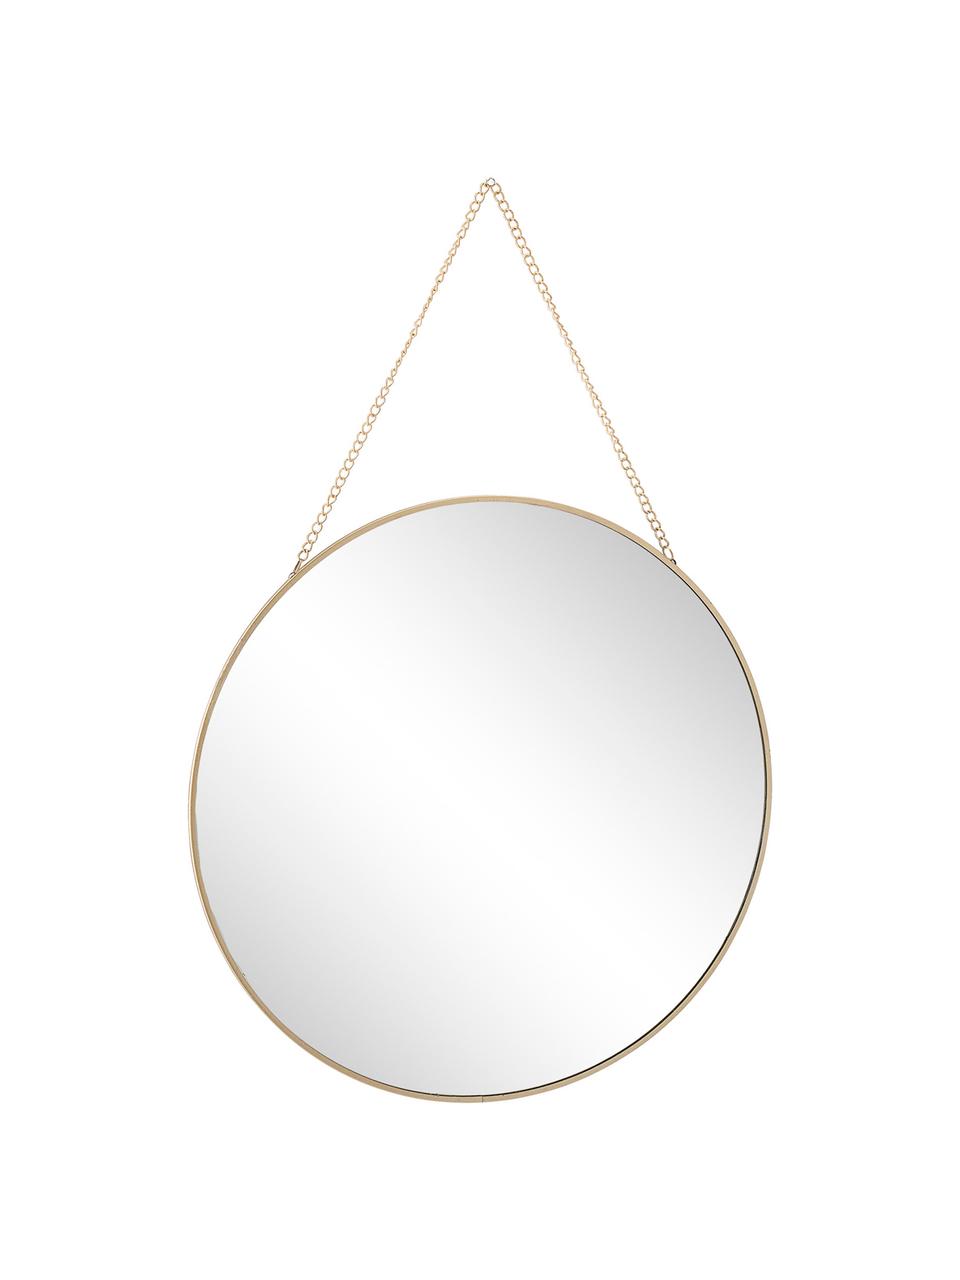 Specchio da parete dorato con catena in metallo Lala, Cornice: metallo rivestito, Superficie dello specchio: lastra di vetro, Ottonato, Ø 38 cm